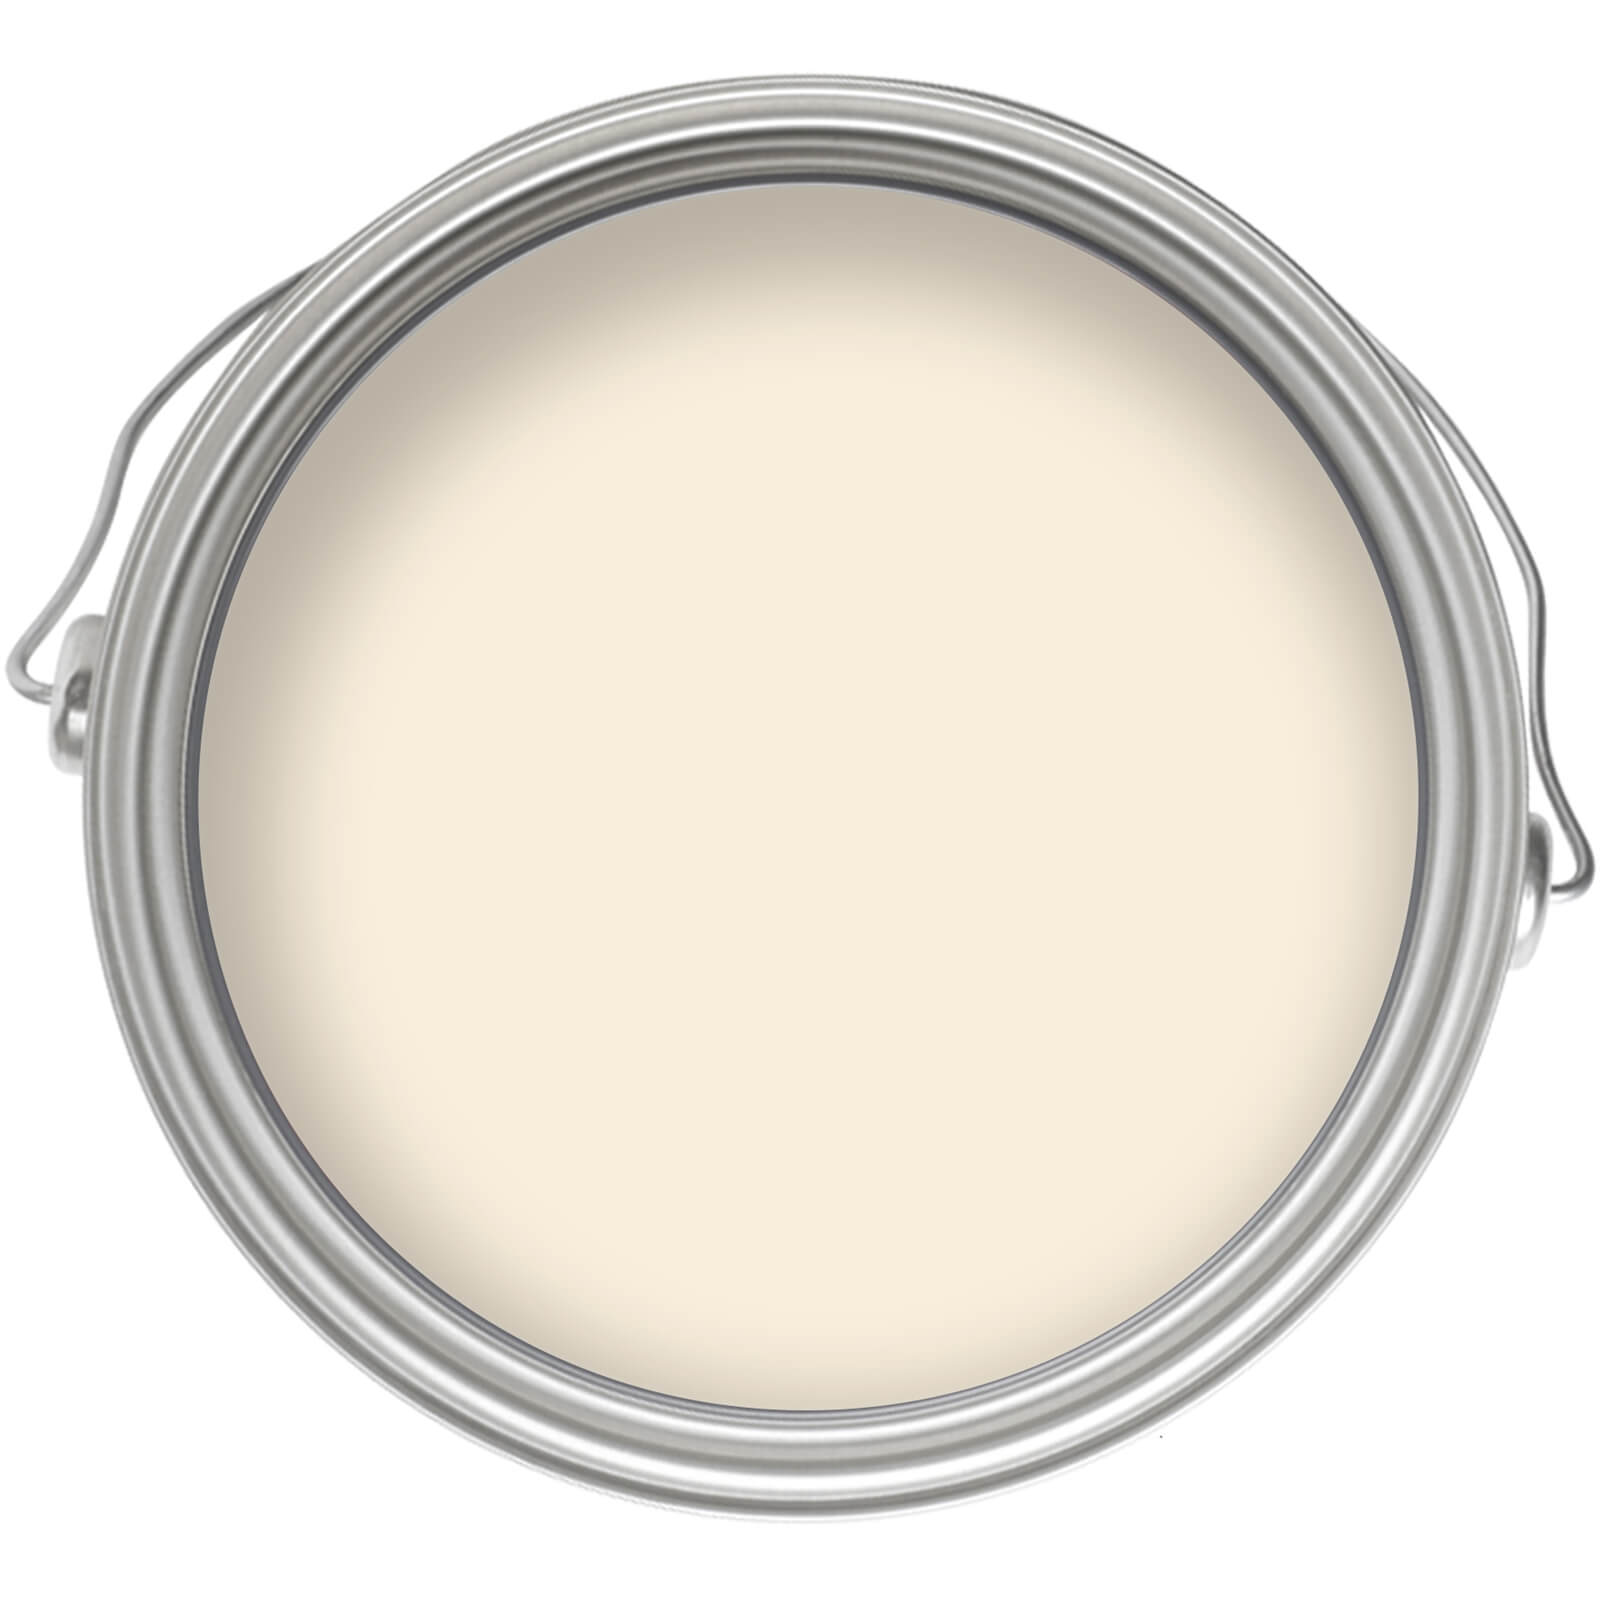 Dulux Easycare Washable & Tough Matt Paint Ivory Lace - Tester 30ml